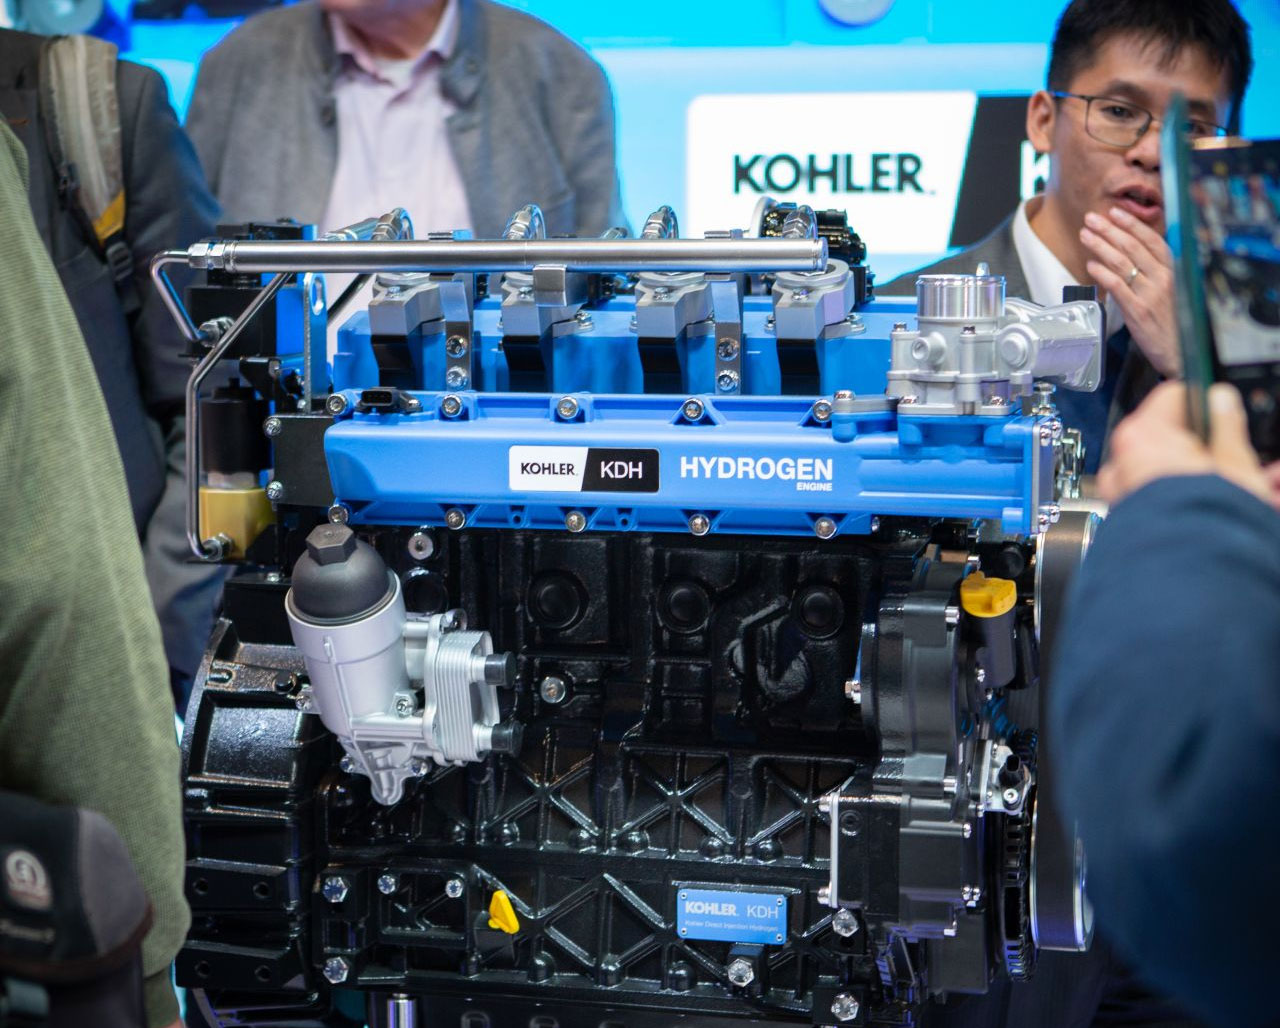 Kohler dévoile un moteur hydrogène pour l'agriculture